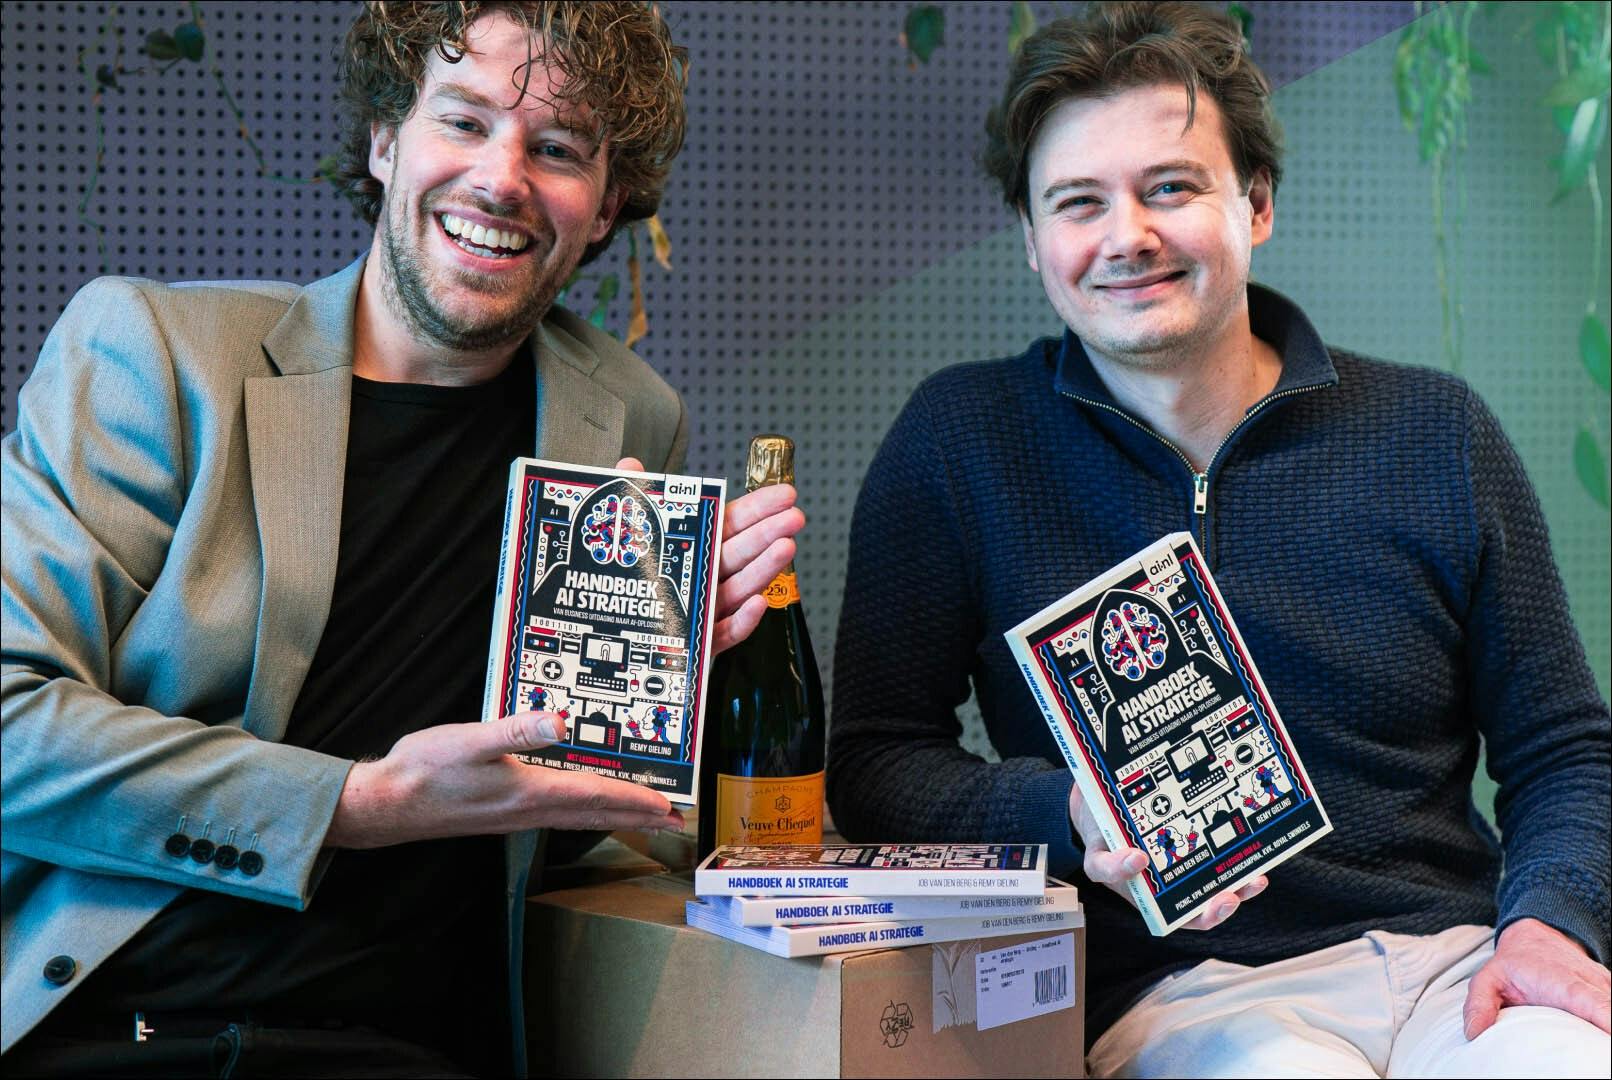 Job van den Berg en Remy Gieling glimlachend met boek in handen